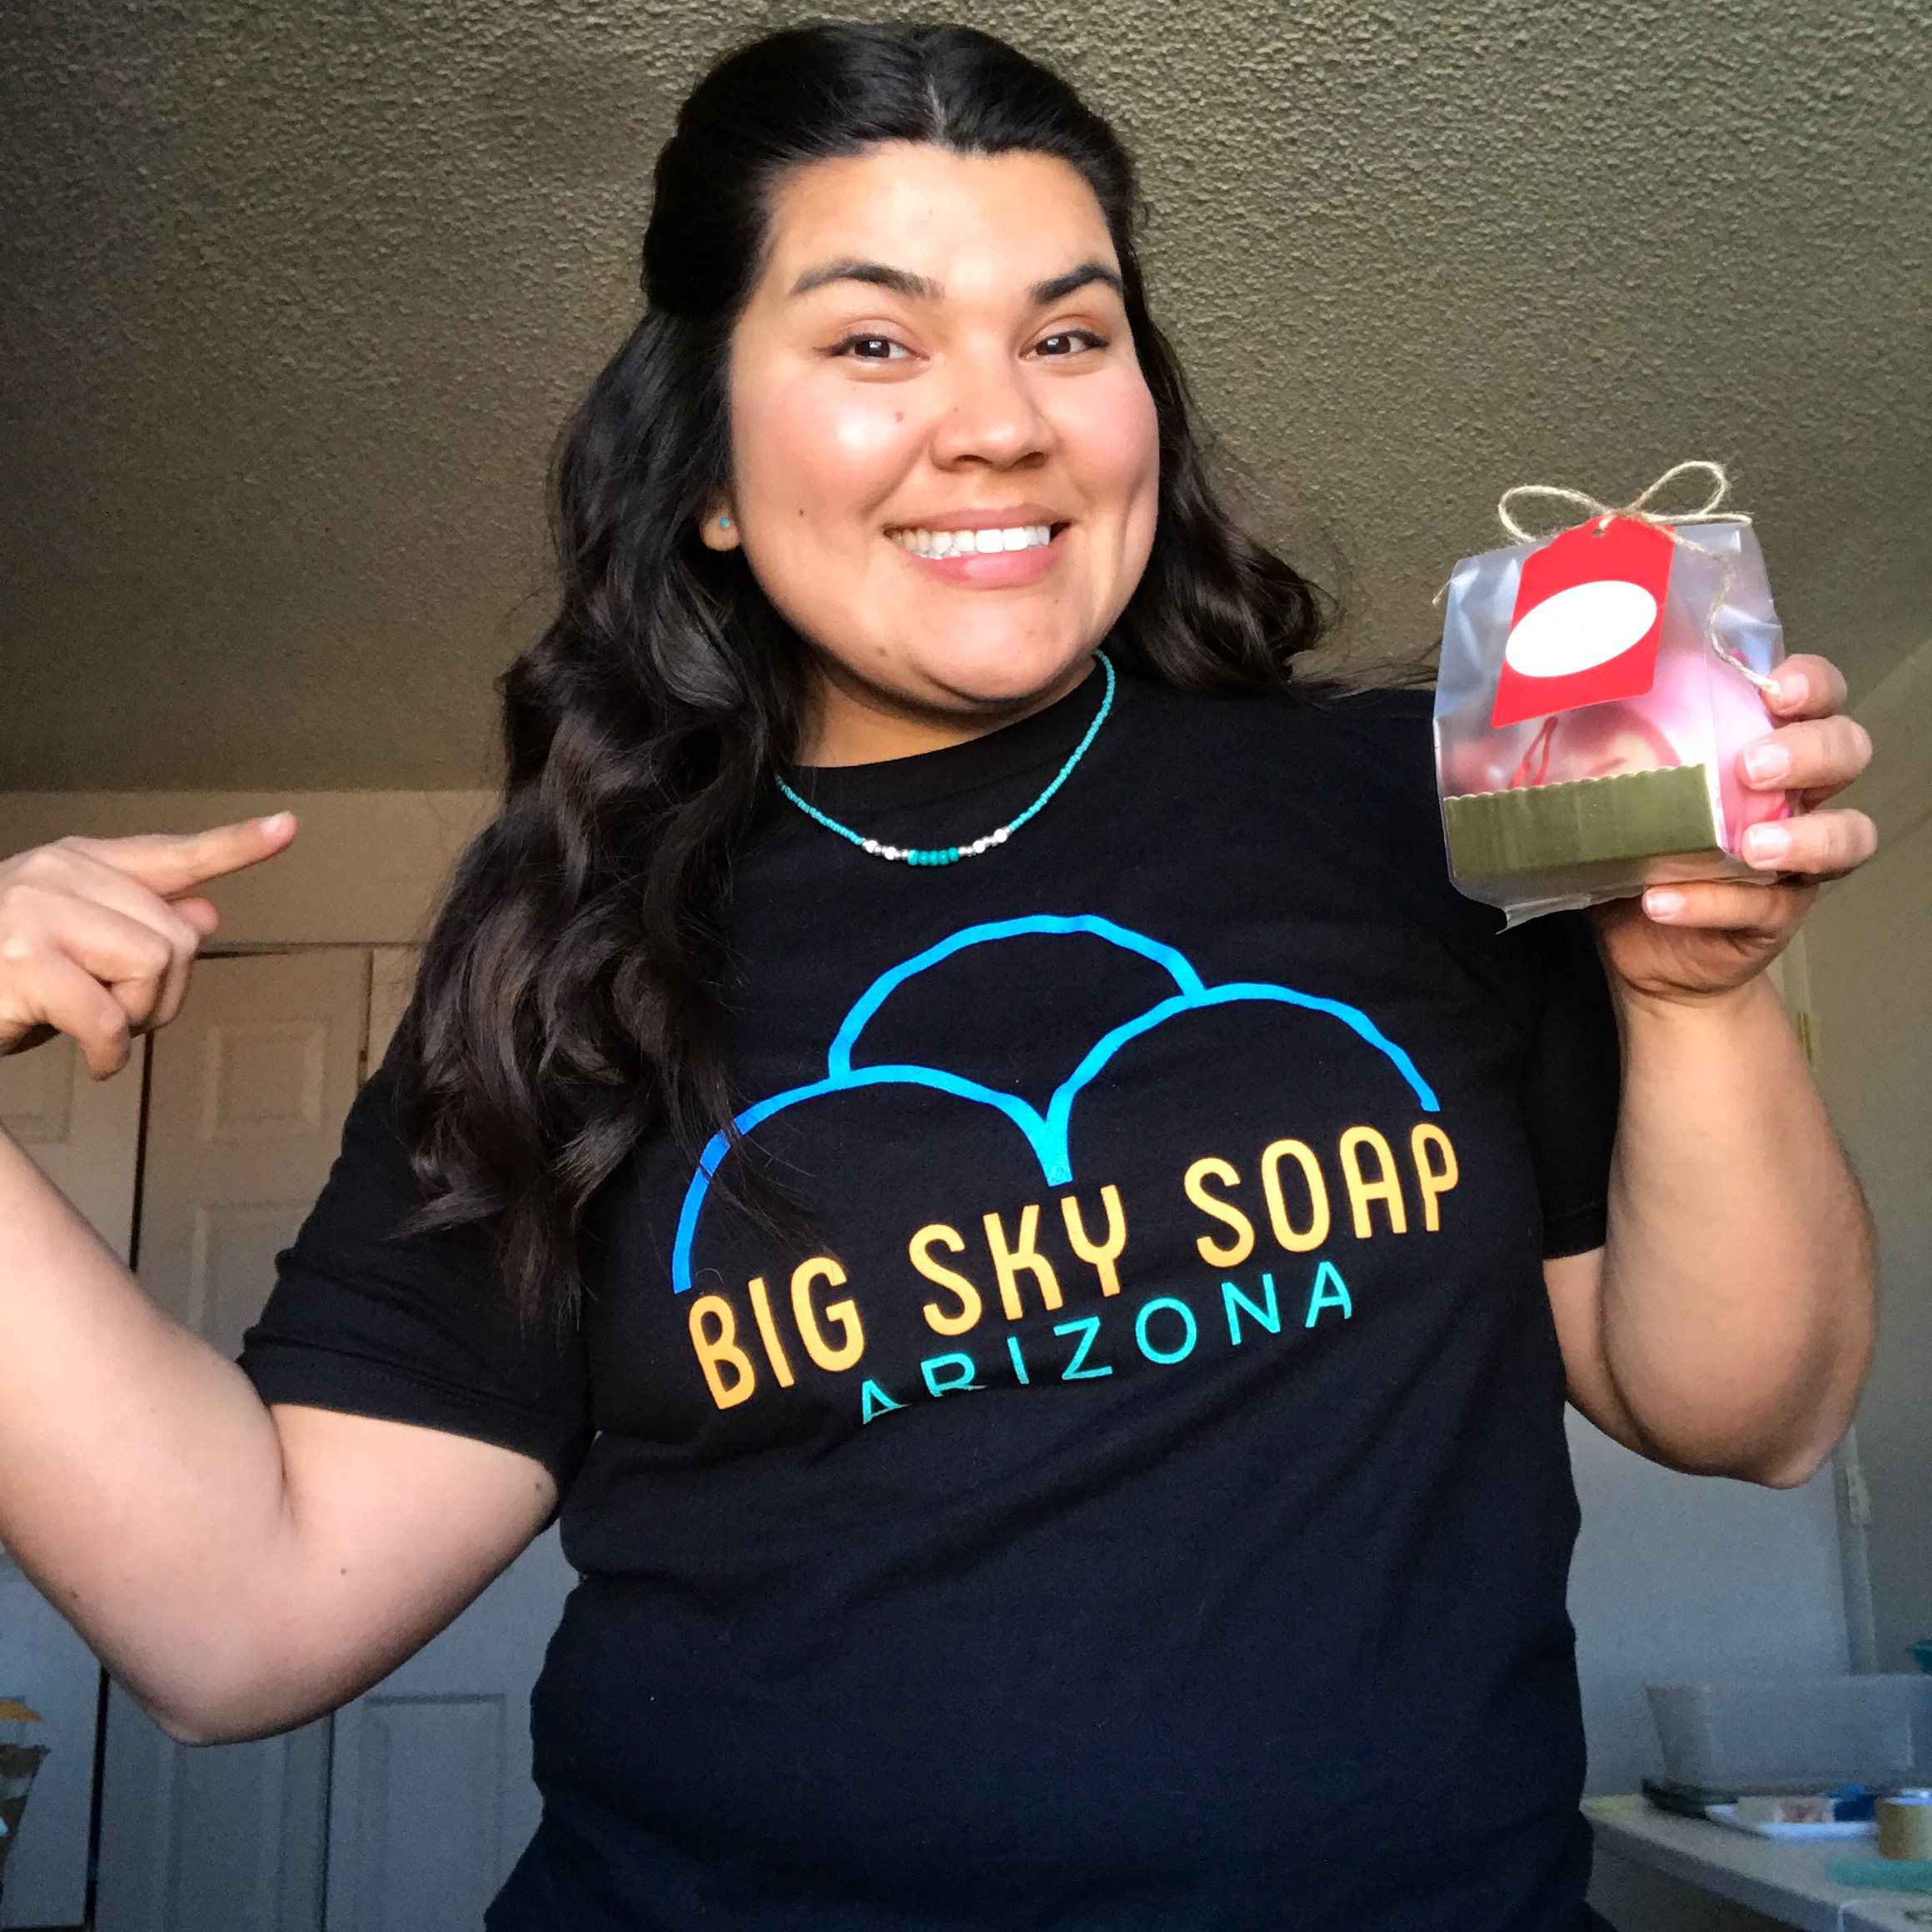 jennifer with big sky soap arizona